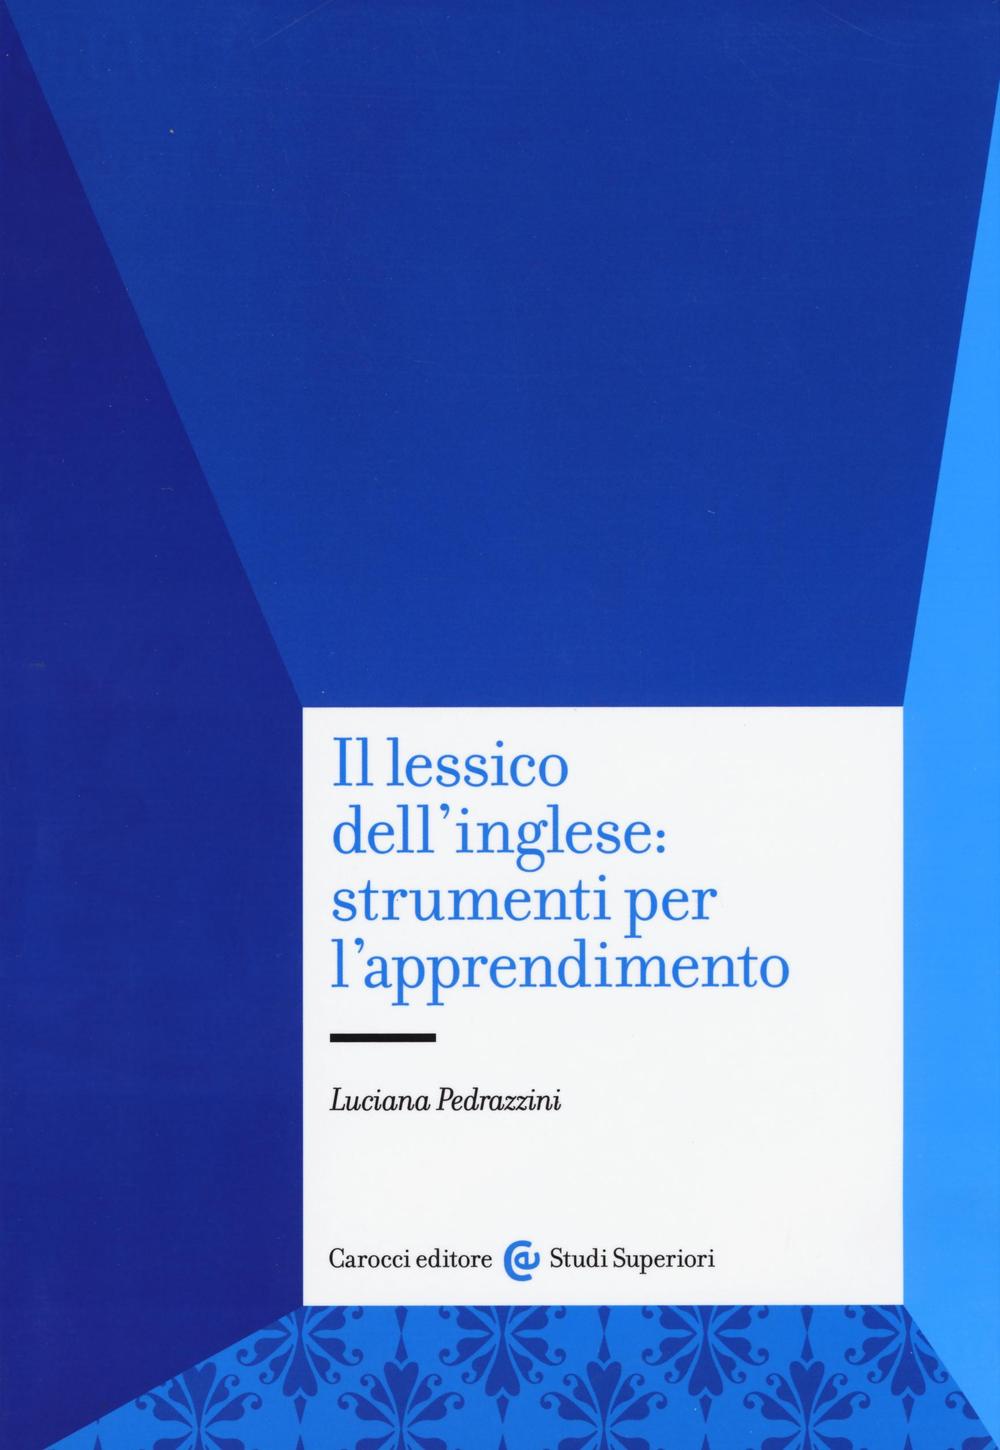 Libri Luciana Pedrazzini - Il Lessico Dell'Inglese: Strumenti Per L'Apprendimento NUOVO SIGILLATO, EDIZIONE DEL 15/09/2016 SUBITO DISPONIBILE